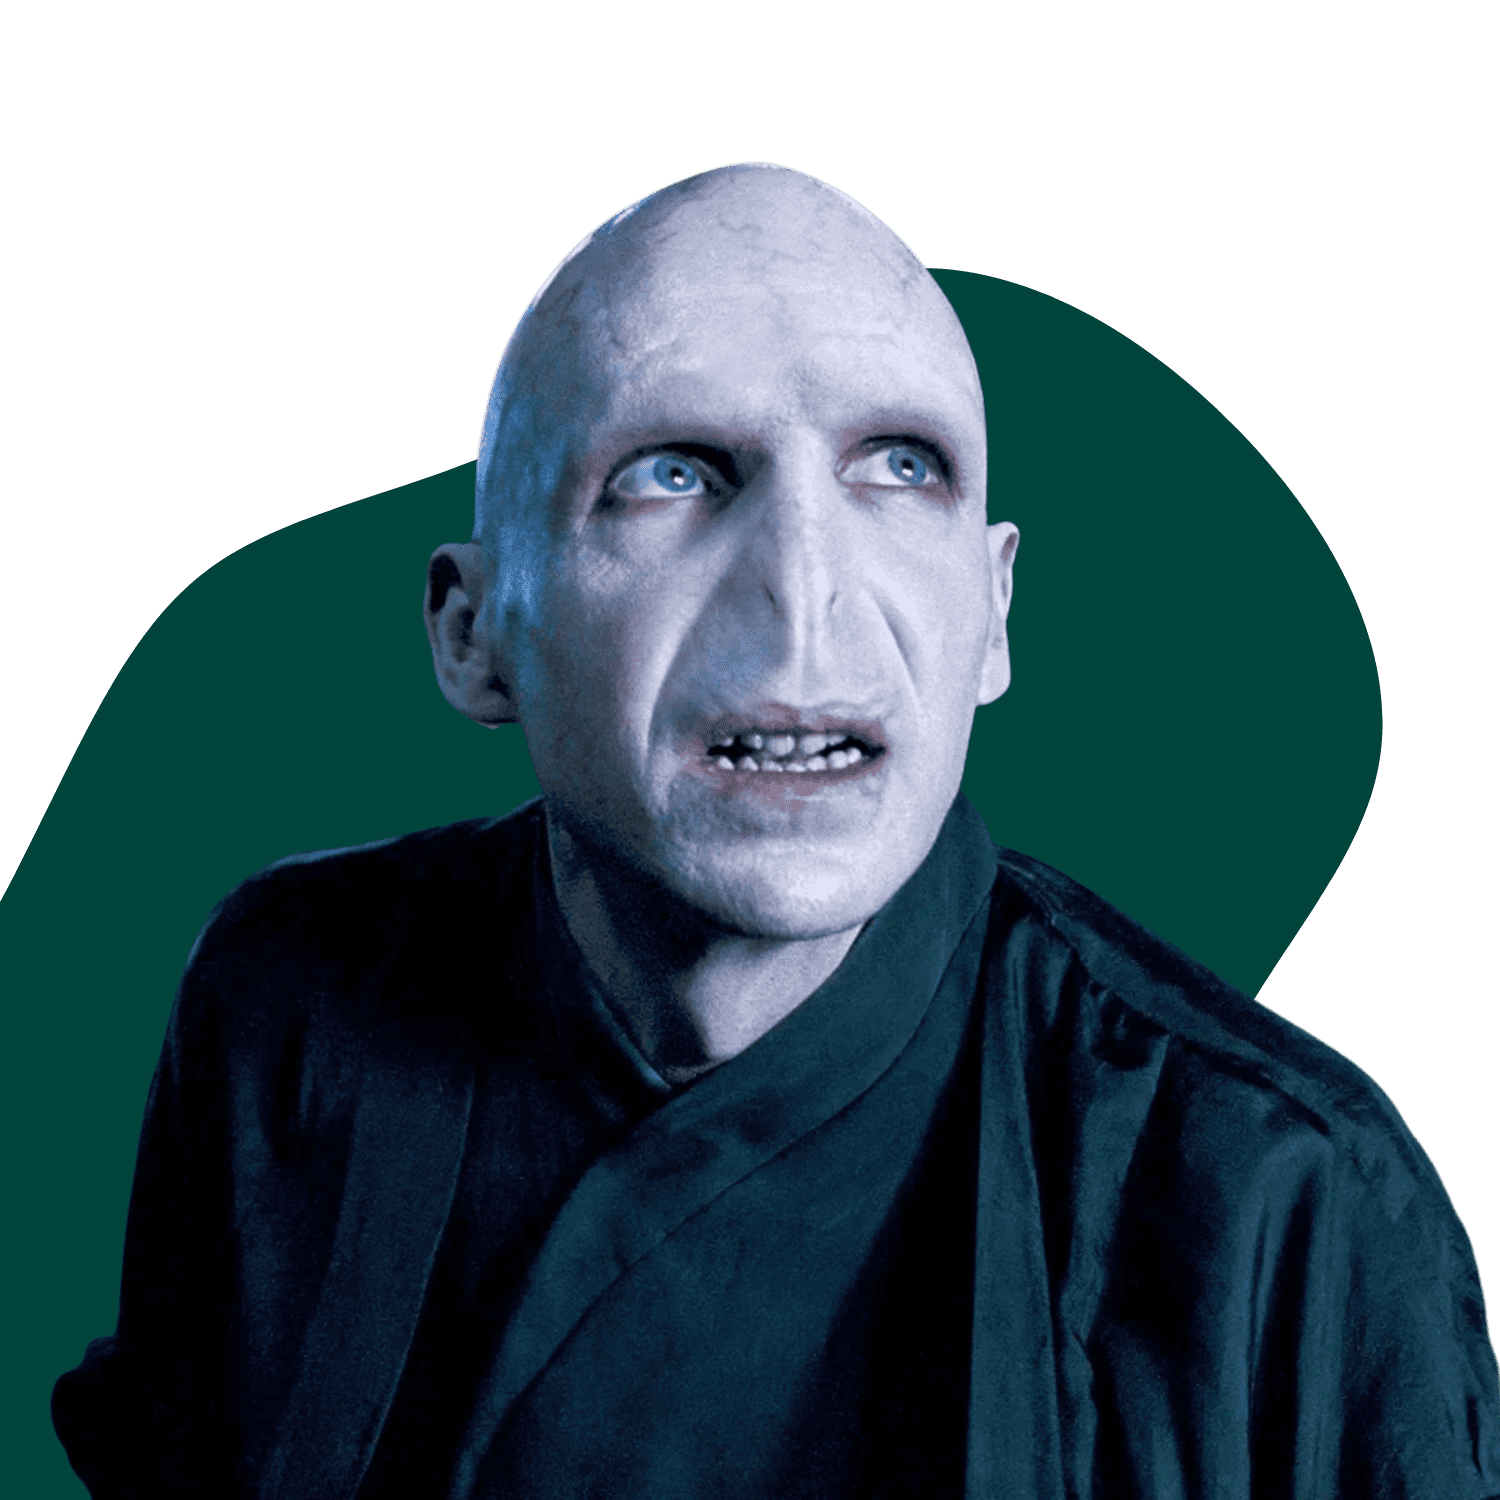 Voldemort, wie er versucht freundlich zu sein.